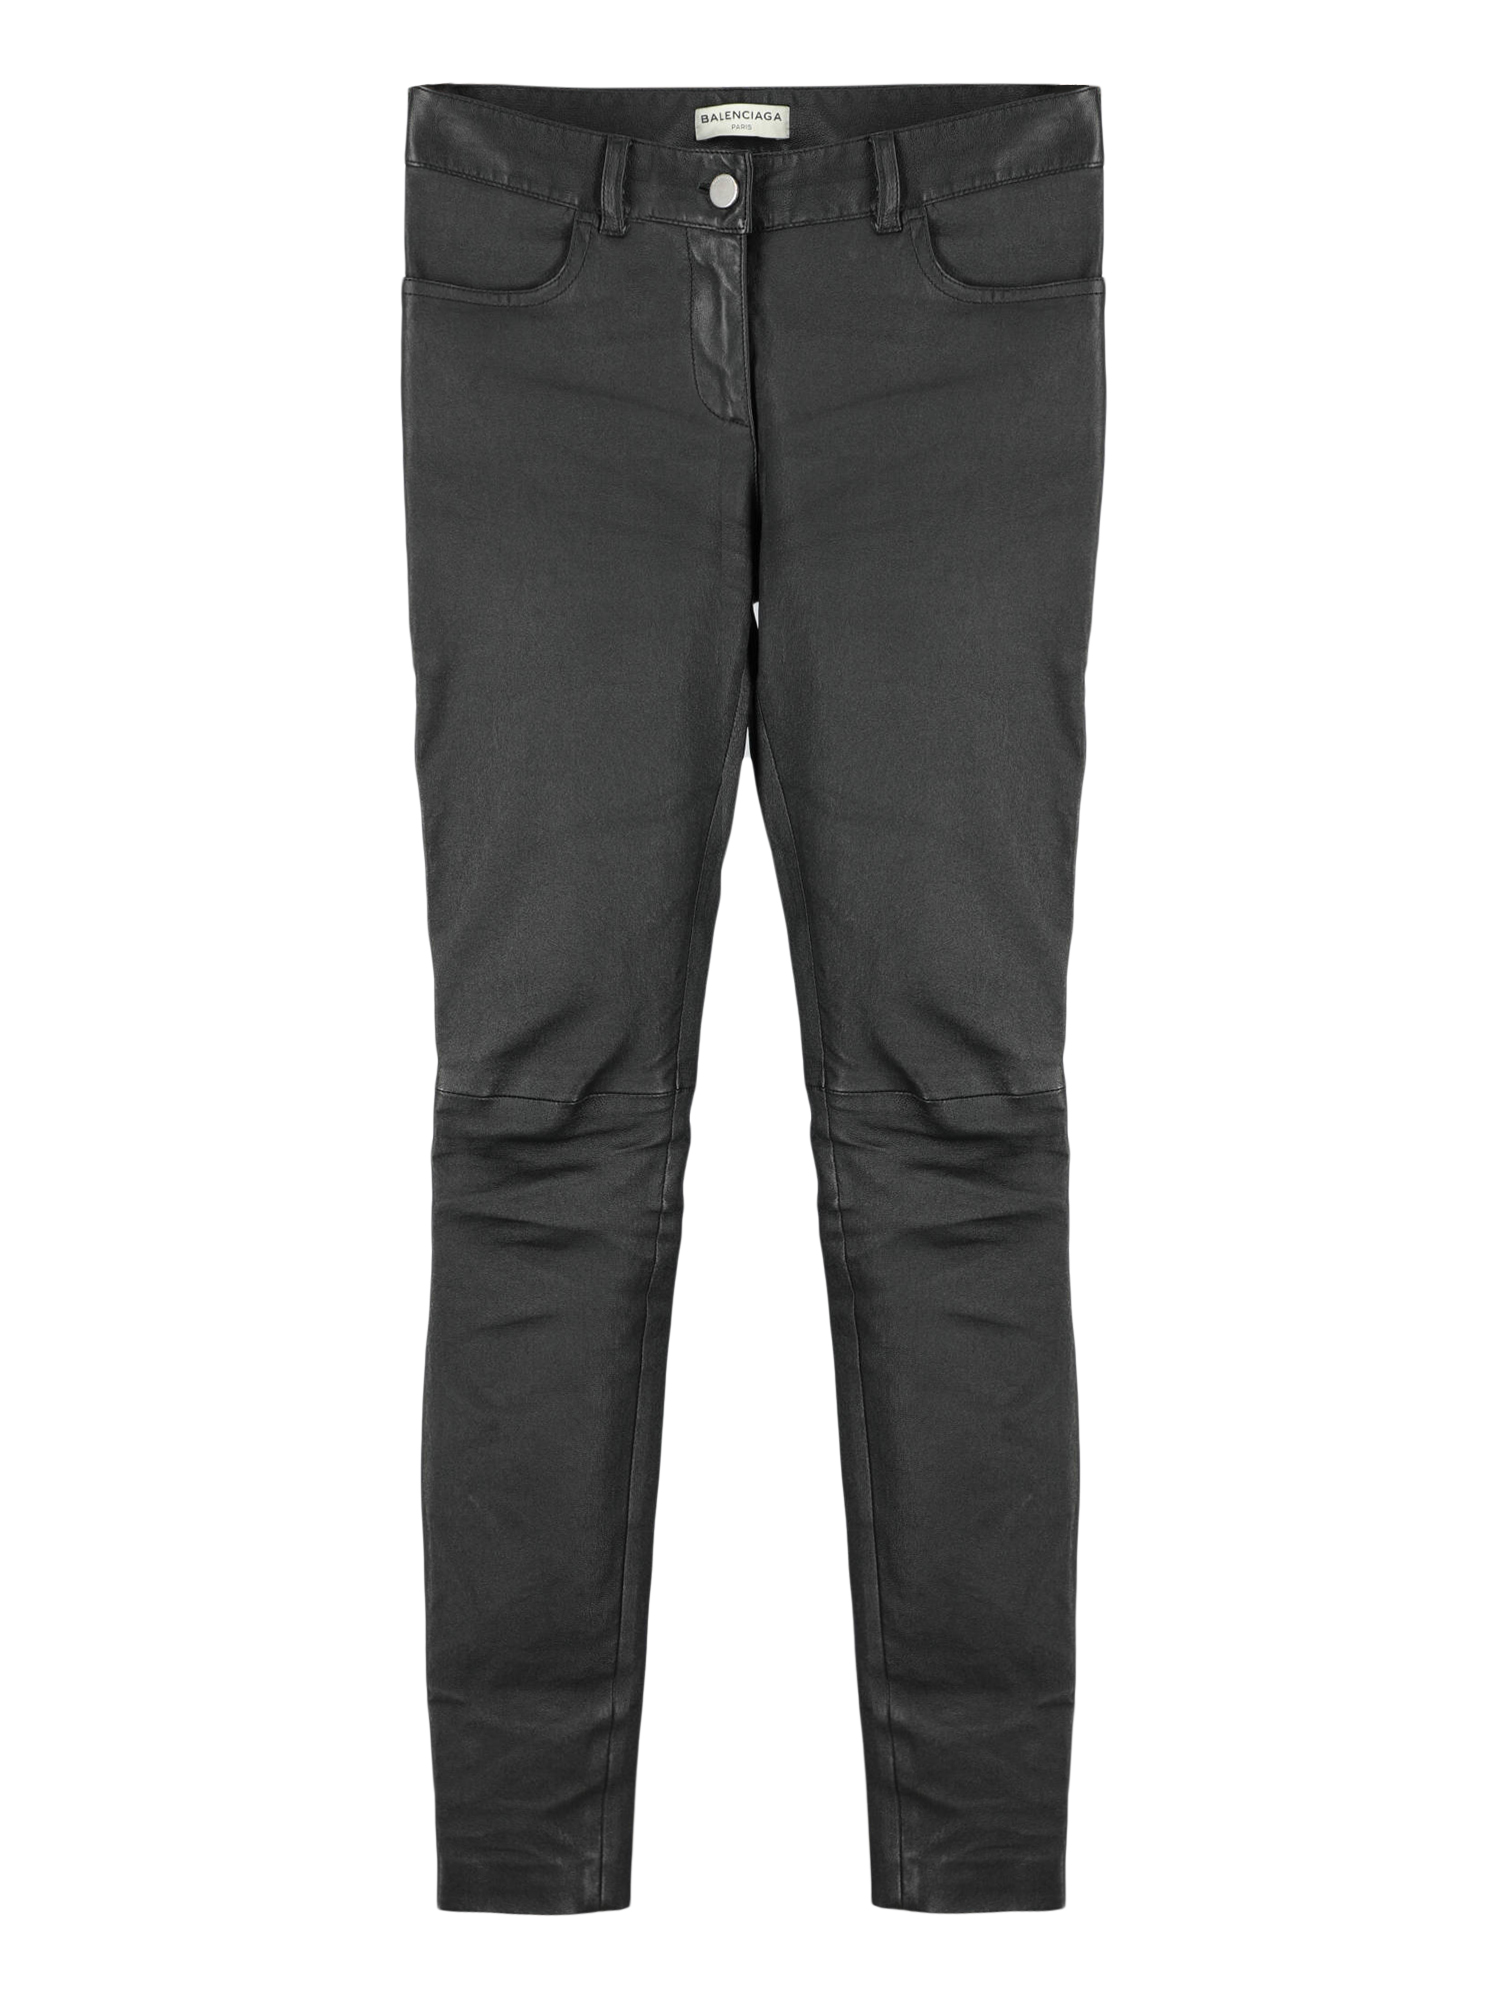 Pantalons Pour Femme - Balenciaga - En Leather Black - Taille:  -